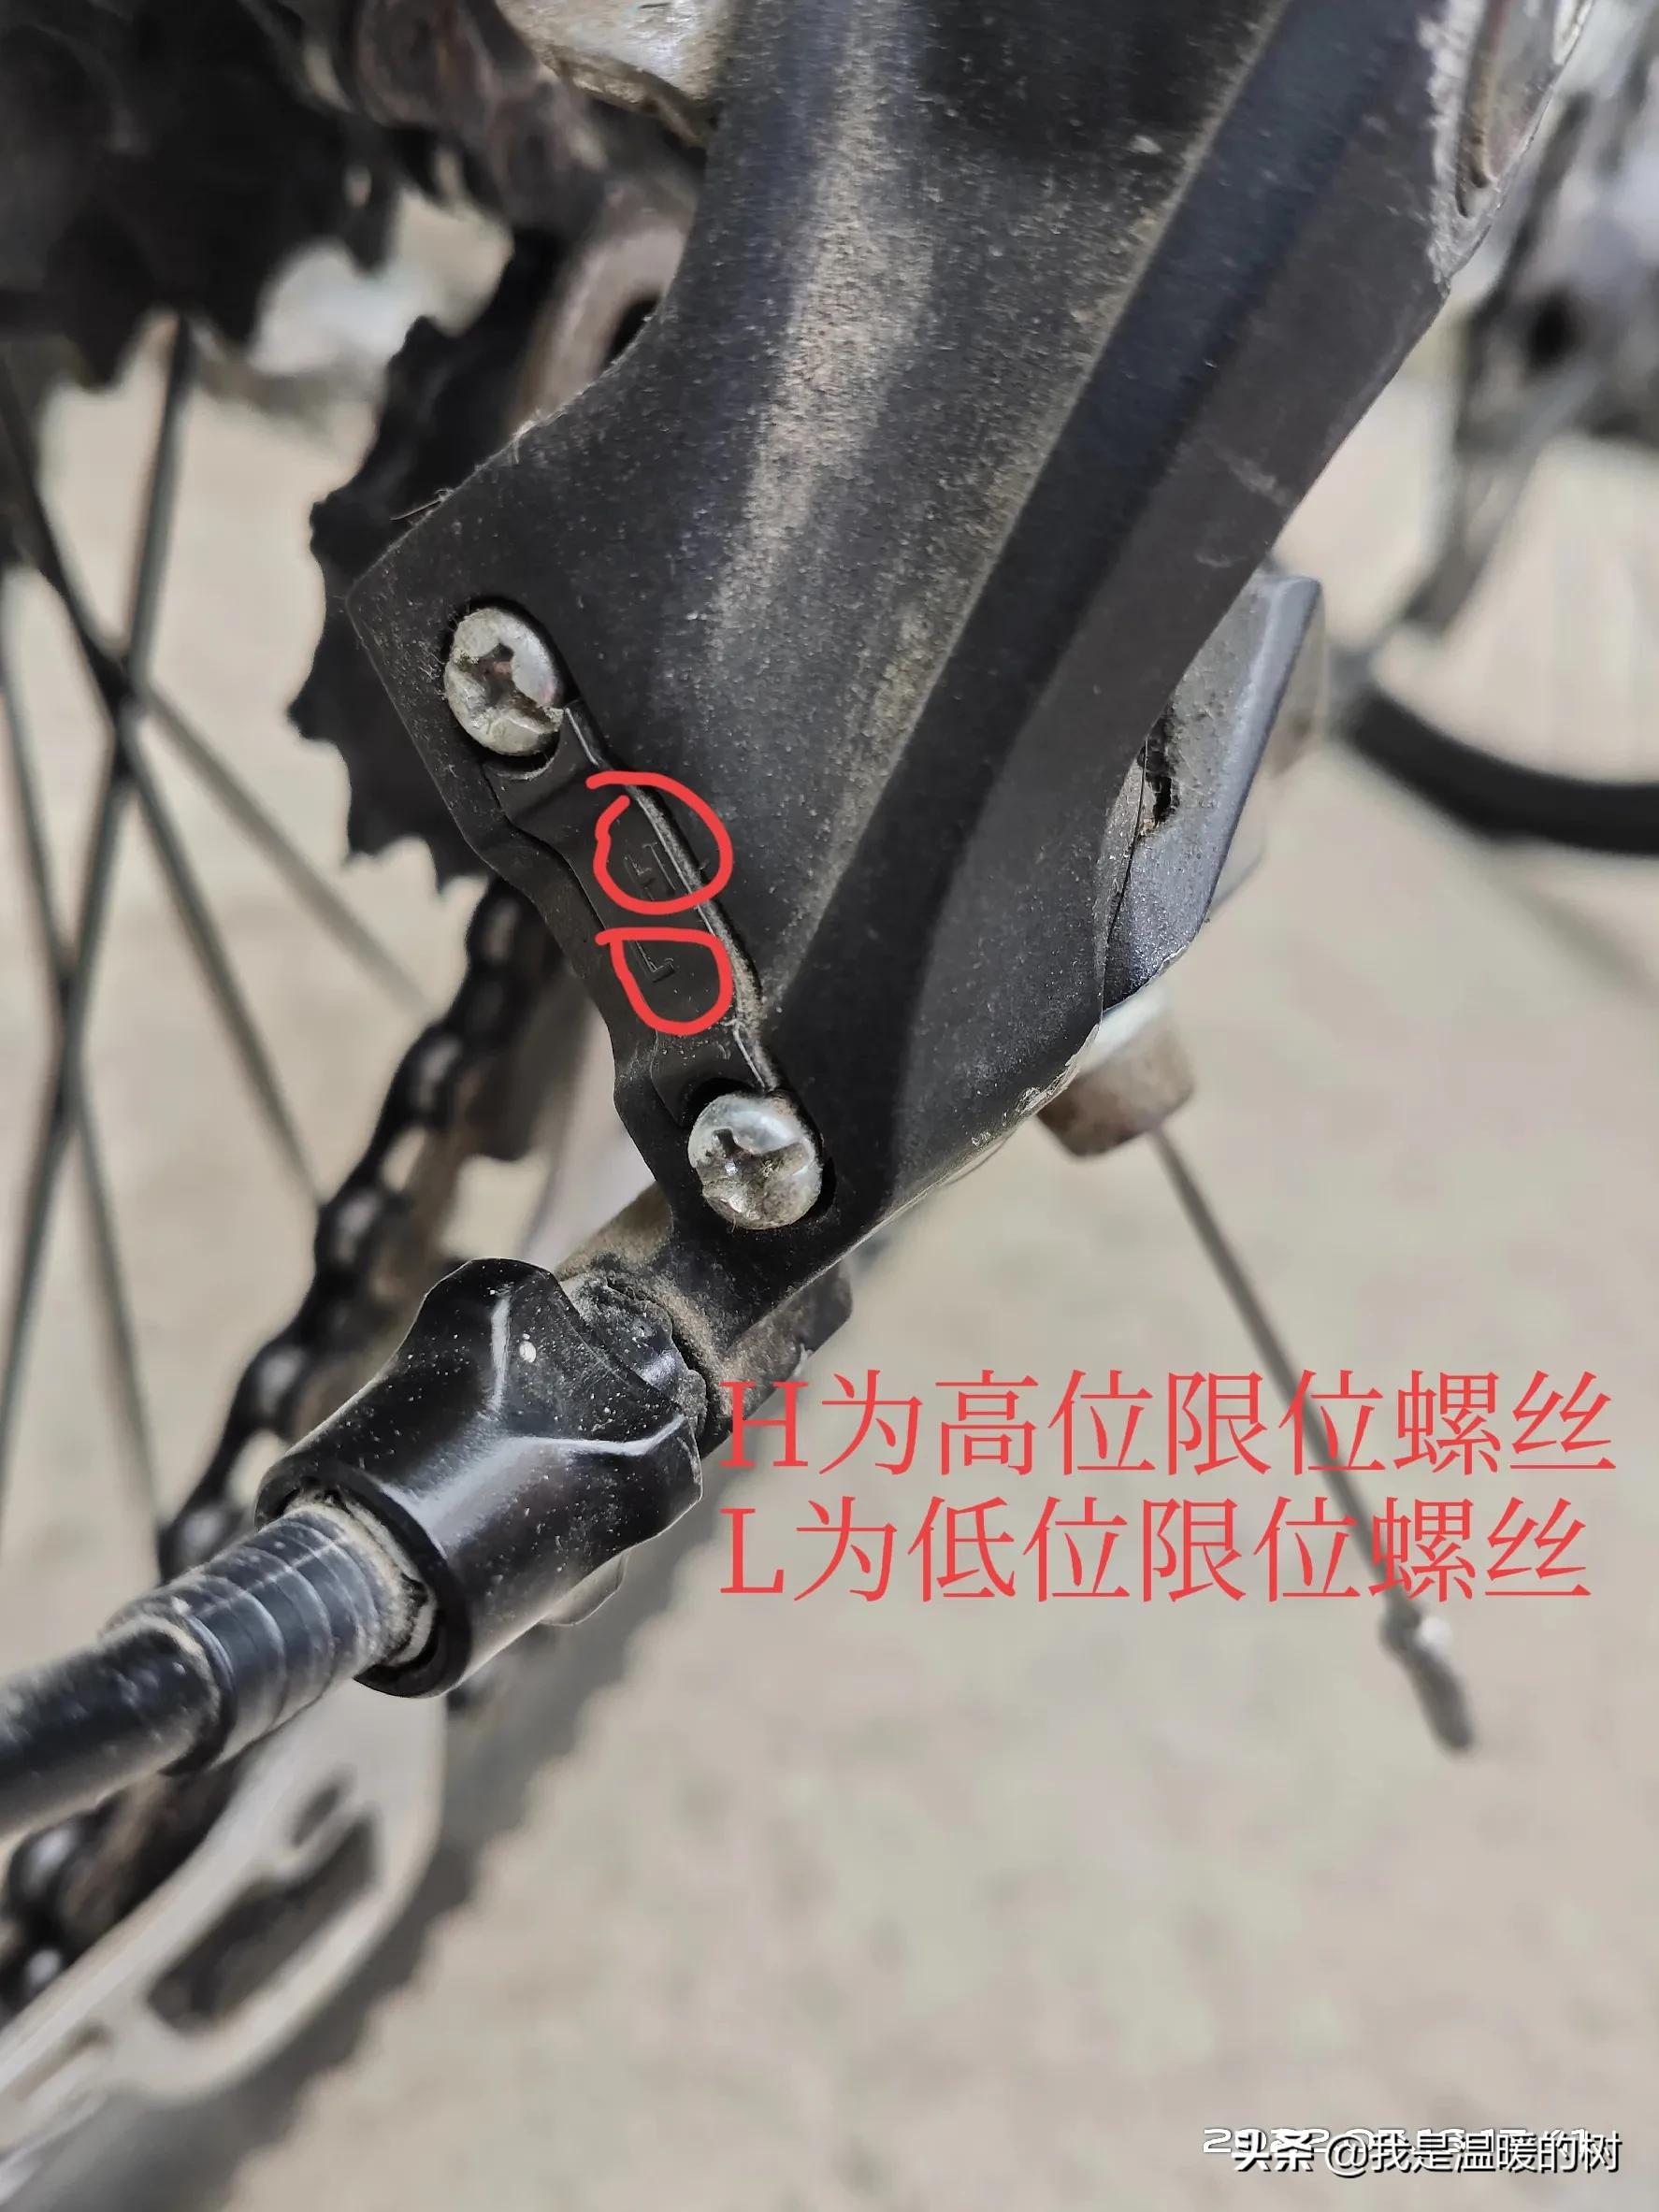 山地车组装超详细过程「自行车安装视频教程安装步骤」